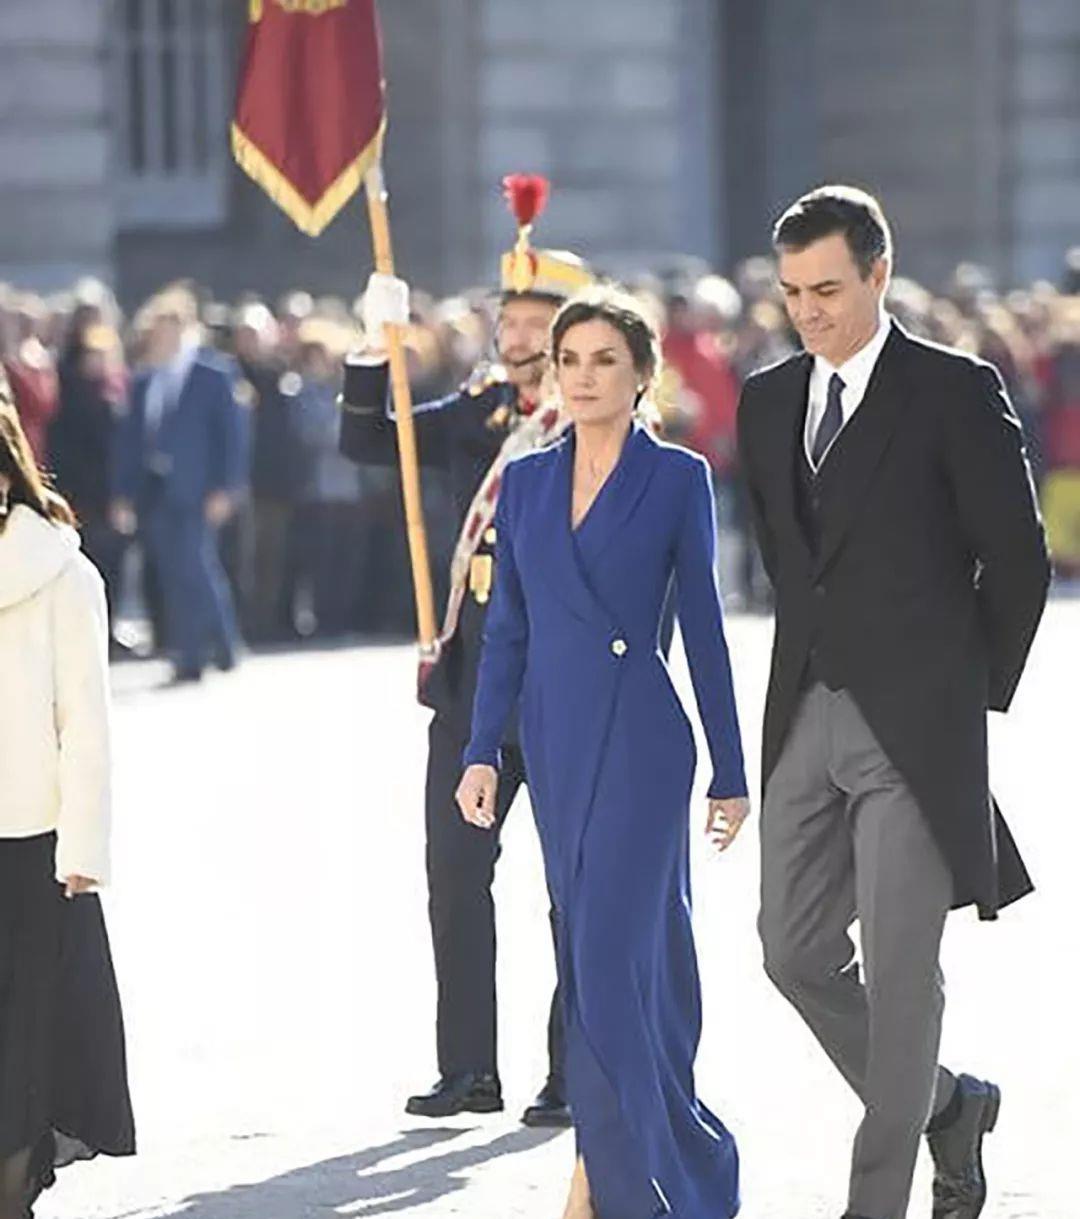 西班牙王后年后首次玩时尚,穿开叉裙风姿卓越